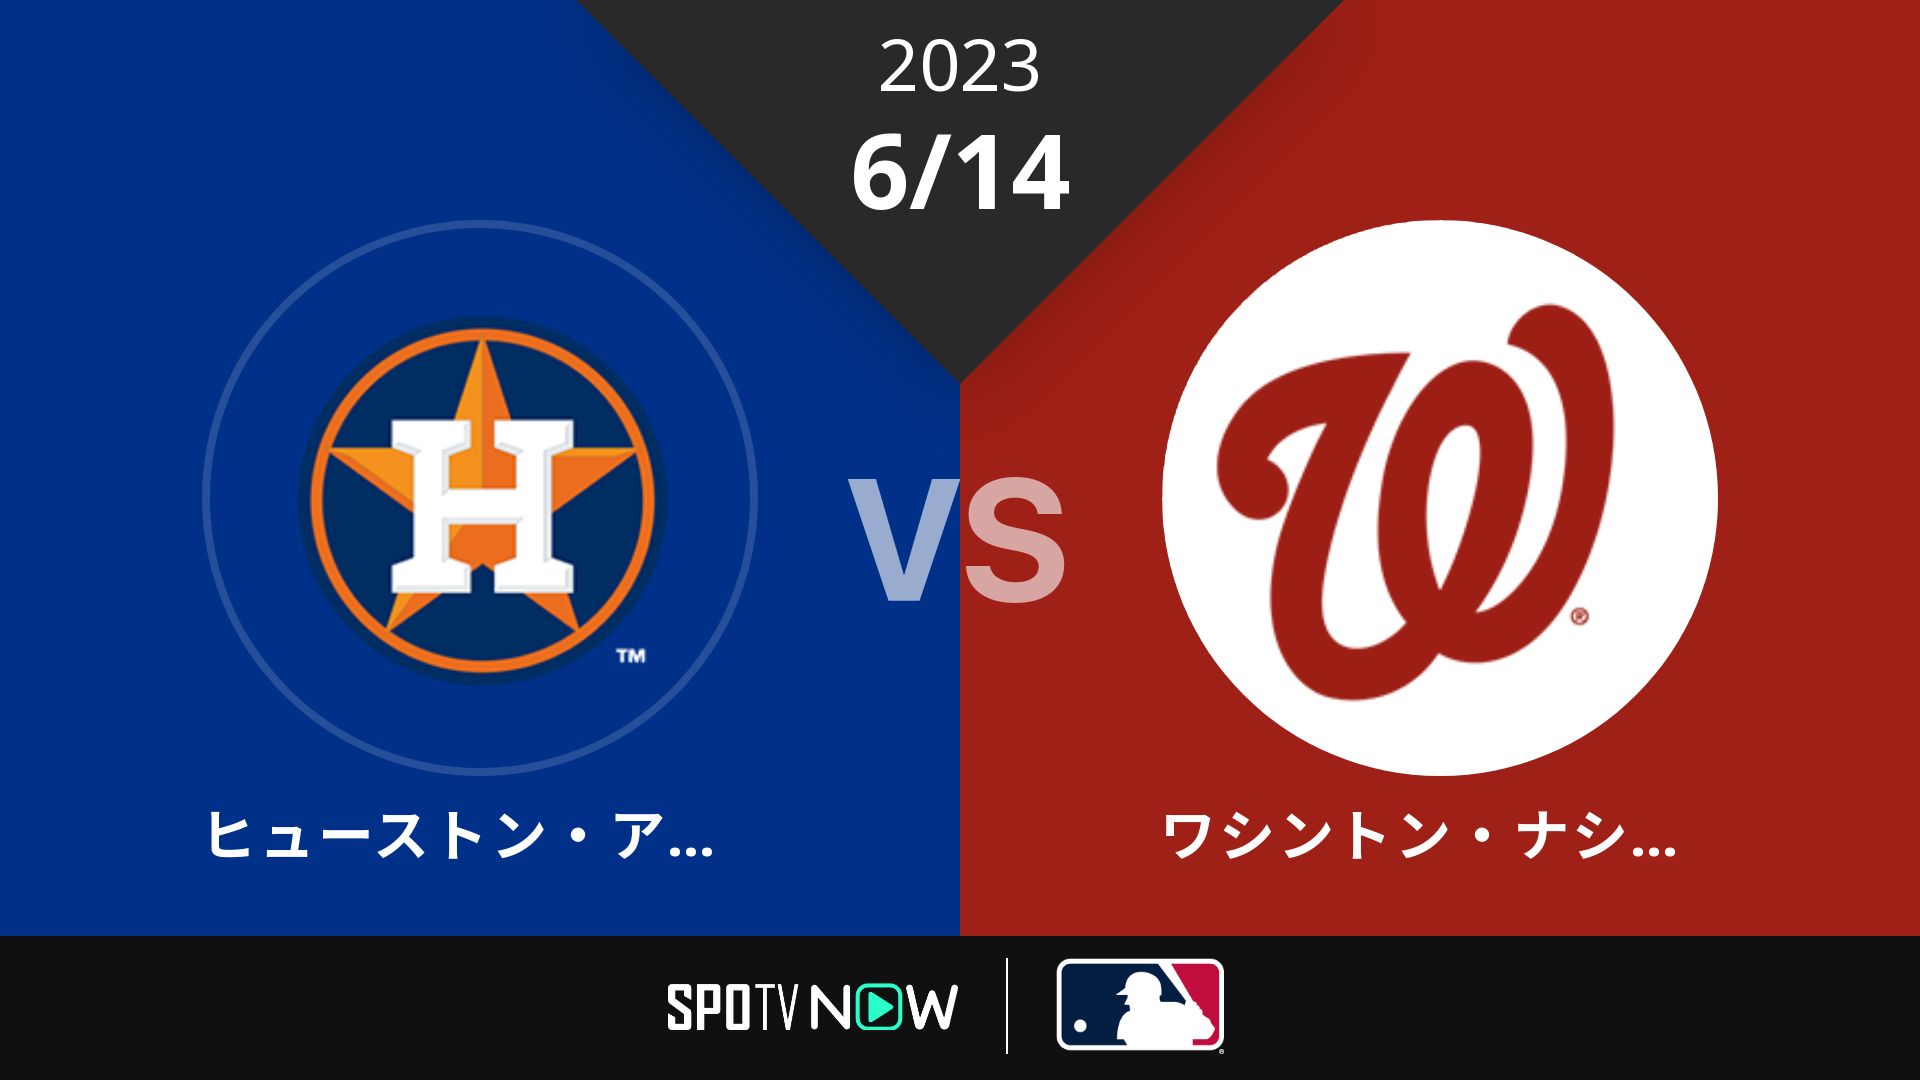 2023/6/14 アストロズ vs ナショナルズ [MLB]